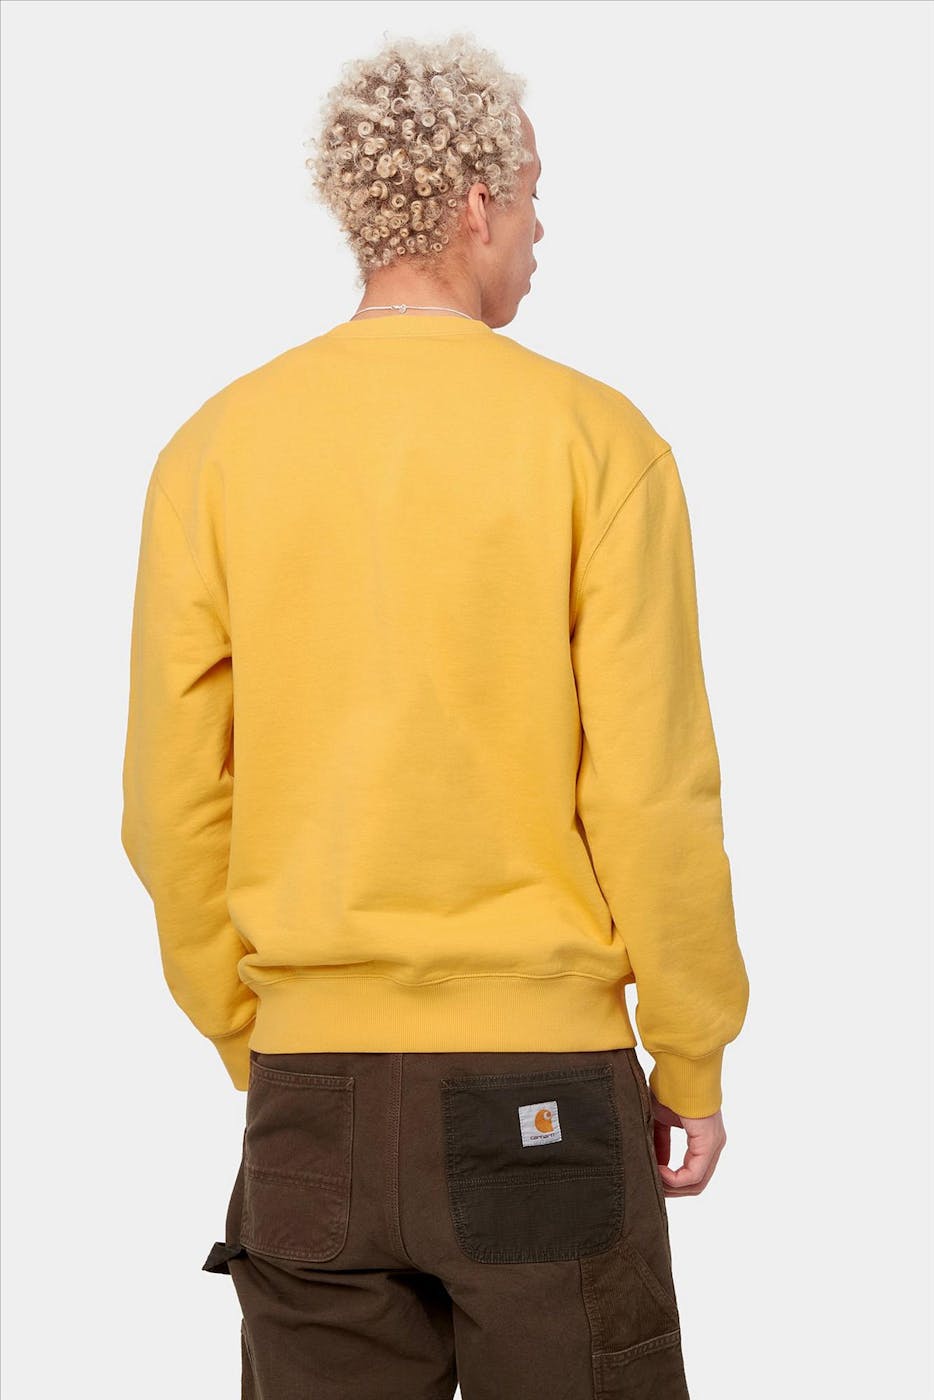 Carhartt WIP - Gele Pocket sweater